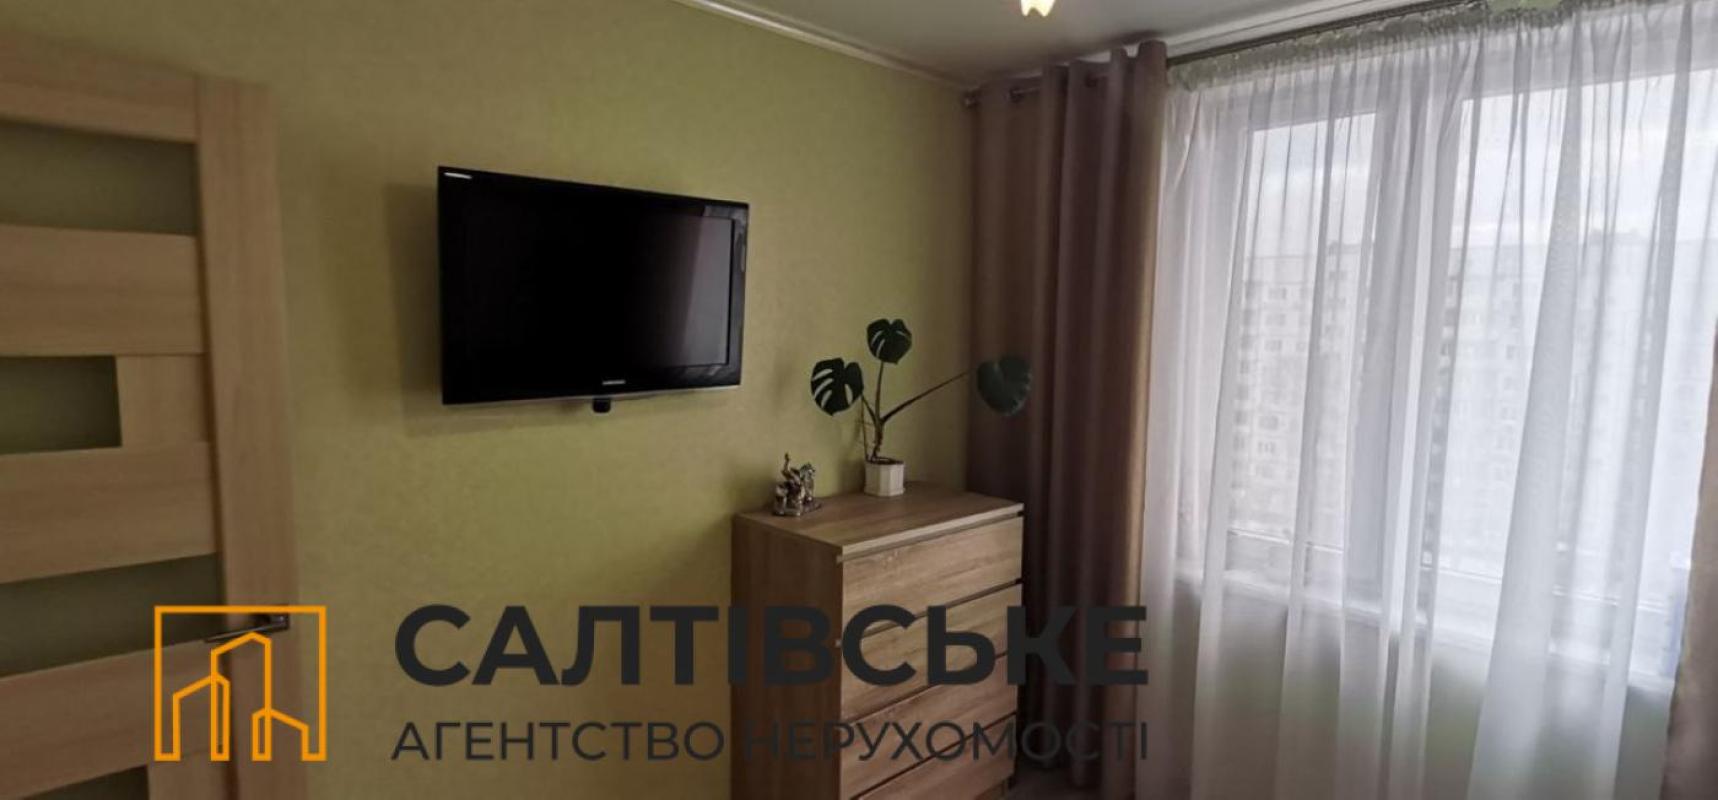 Sale 2 bedroom-(s) apartment 46 sq. m., Saltivske Highway 256